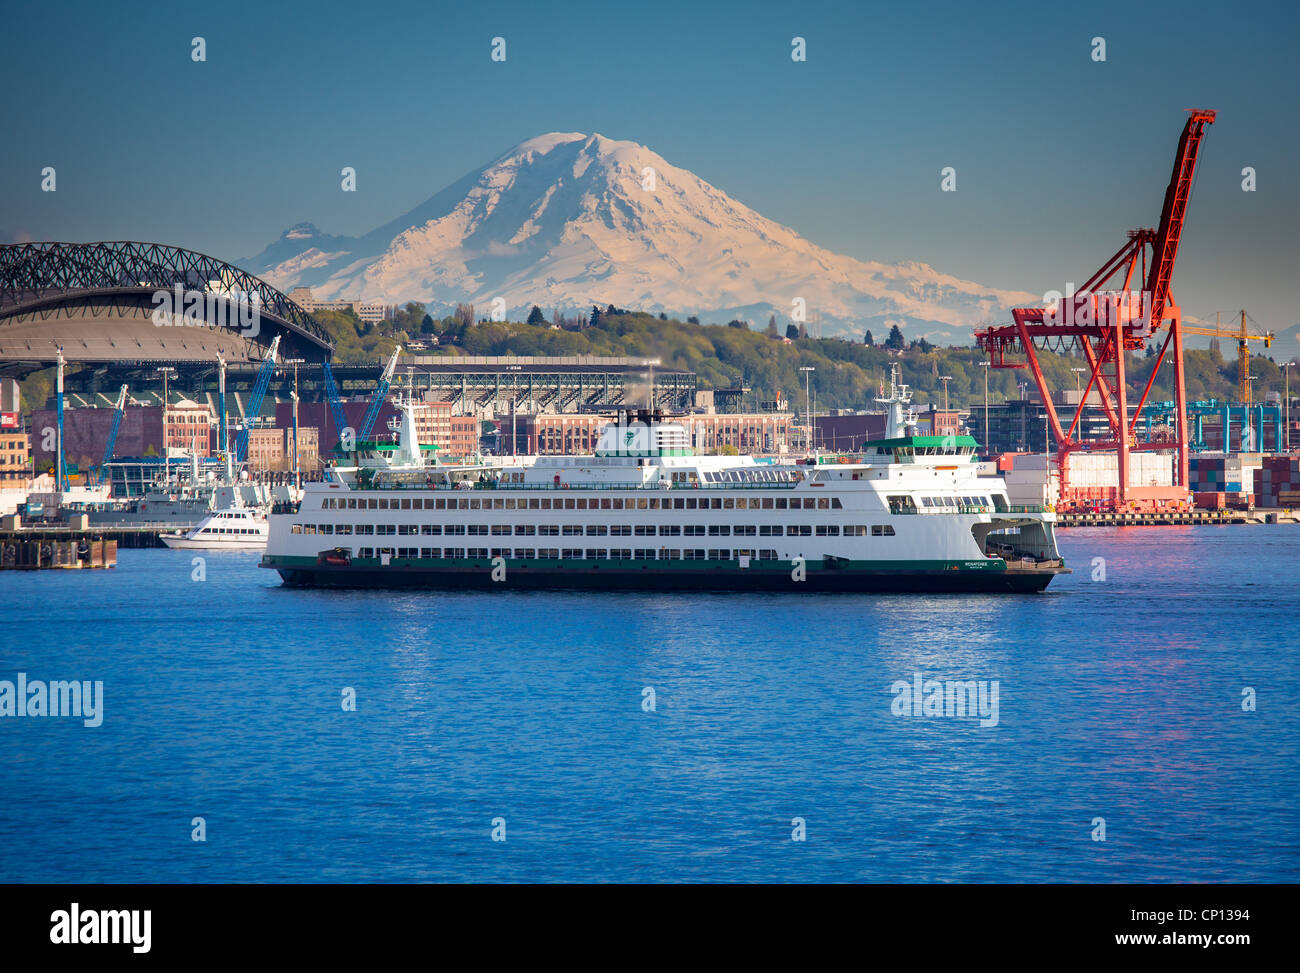 Washington state ferry dans le port de Seattle avec le Mont Rainier dans la distance Banque D'Images